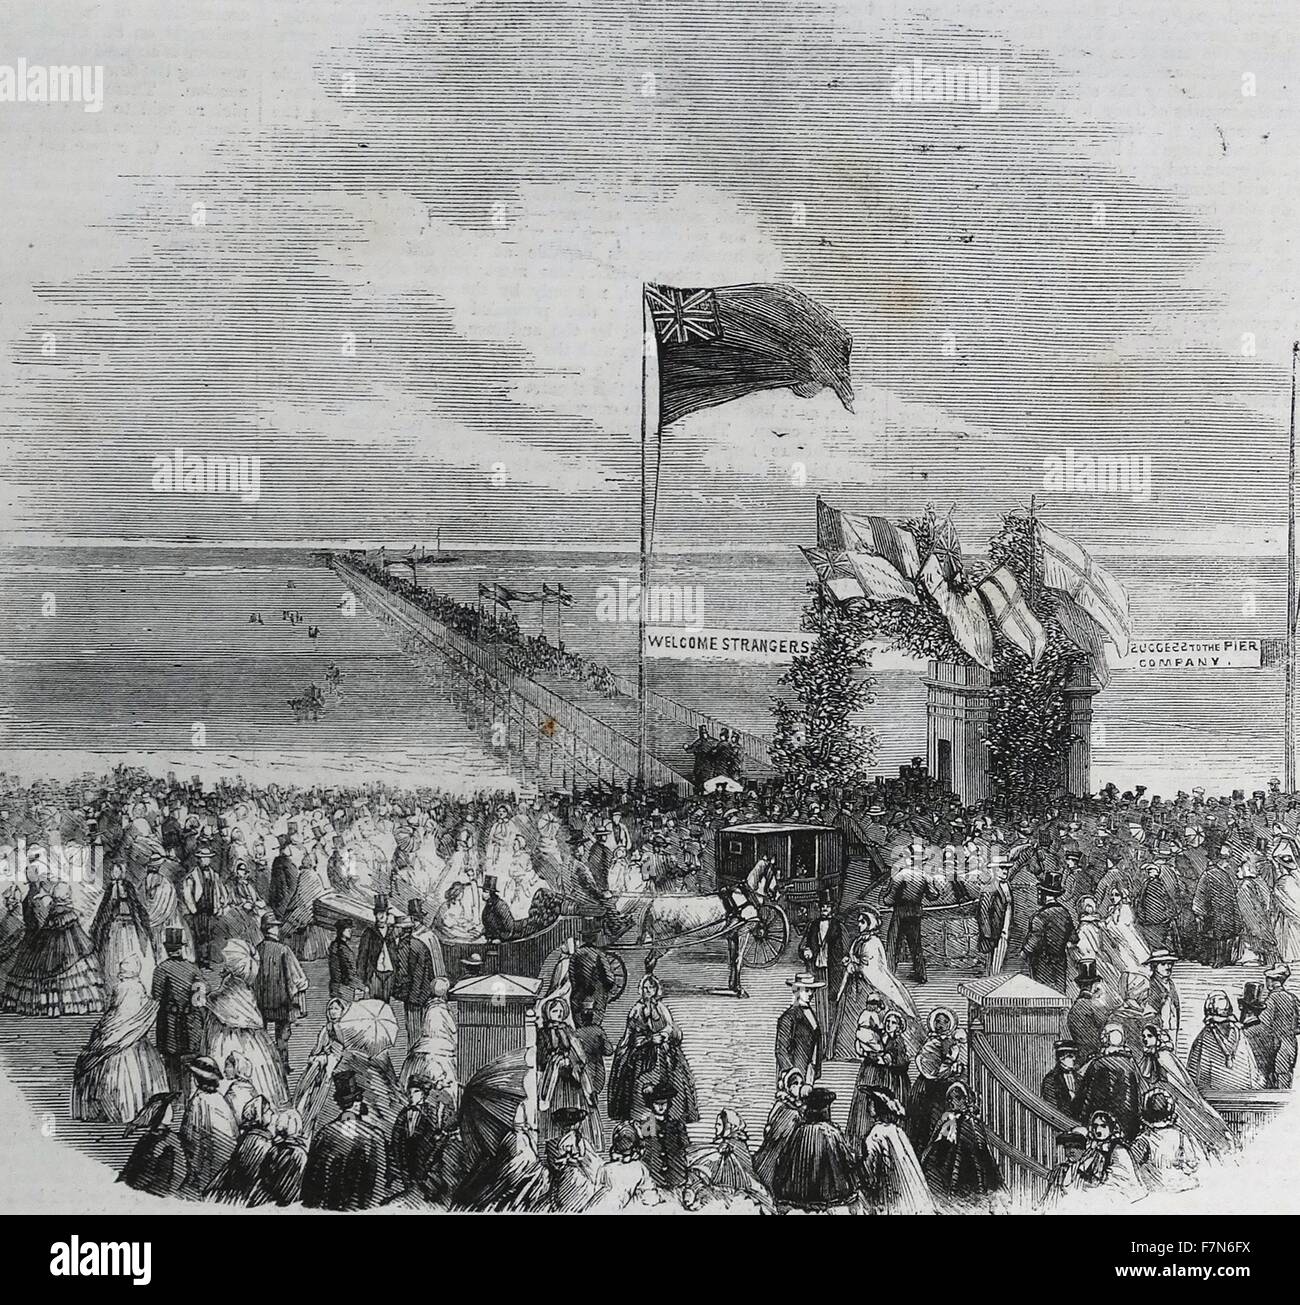 L'ouverture de la jetée de Southport. 1860 Banque D'Images